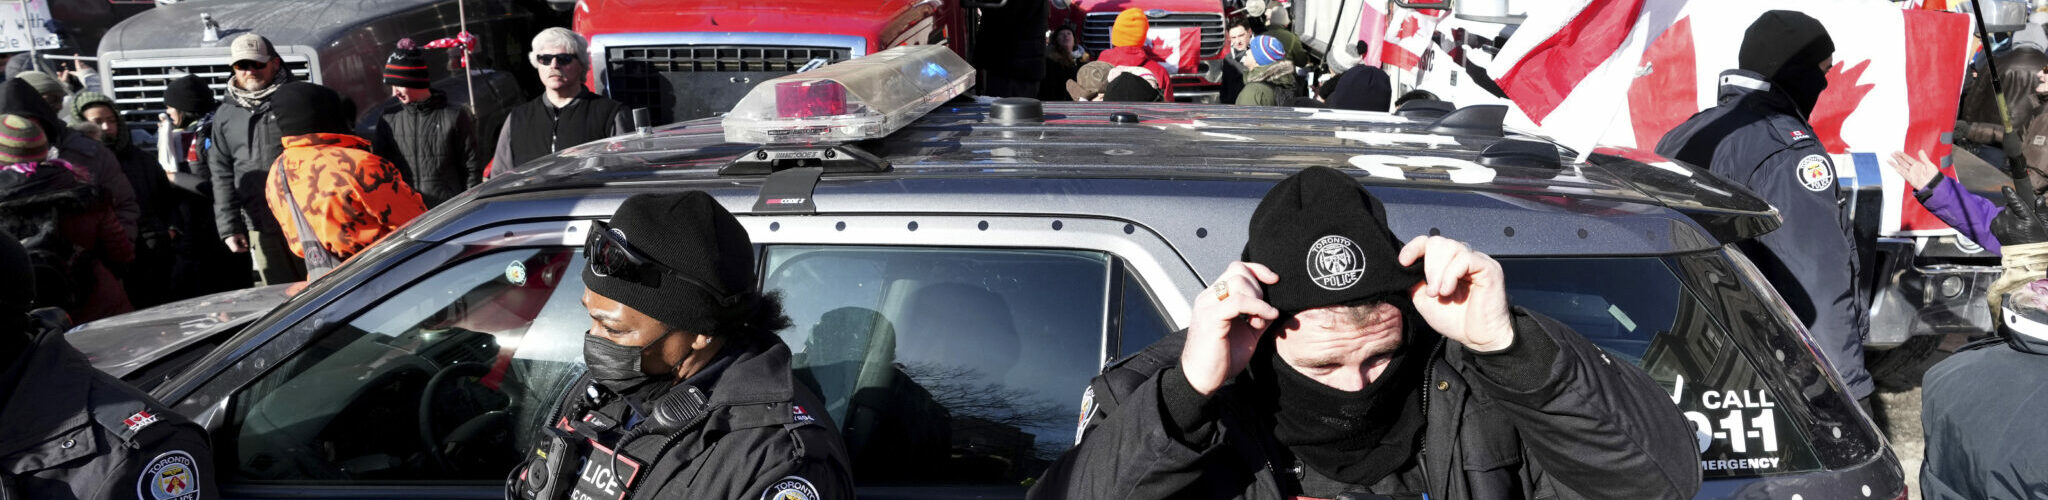 Policija Otave preti hapšenjem ljudima koji su donirali gorivo kamiondžijama (VIDEO)